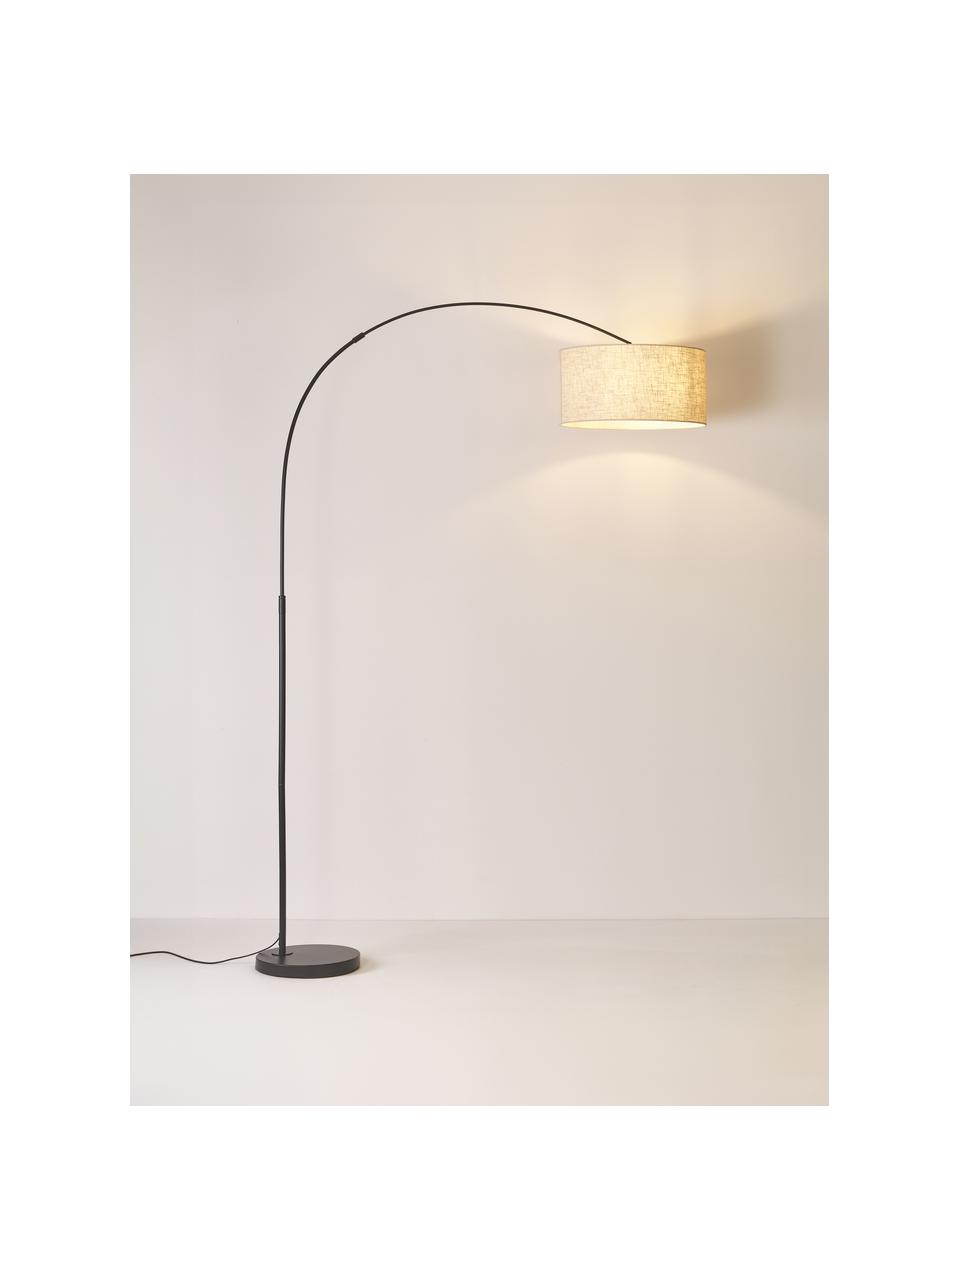 Grote booglamp Niels, Lampvoet: geborsteld metaal, Lampenkap: linnen, Lichtbeige, zwart, H 218 cm